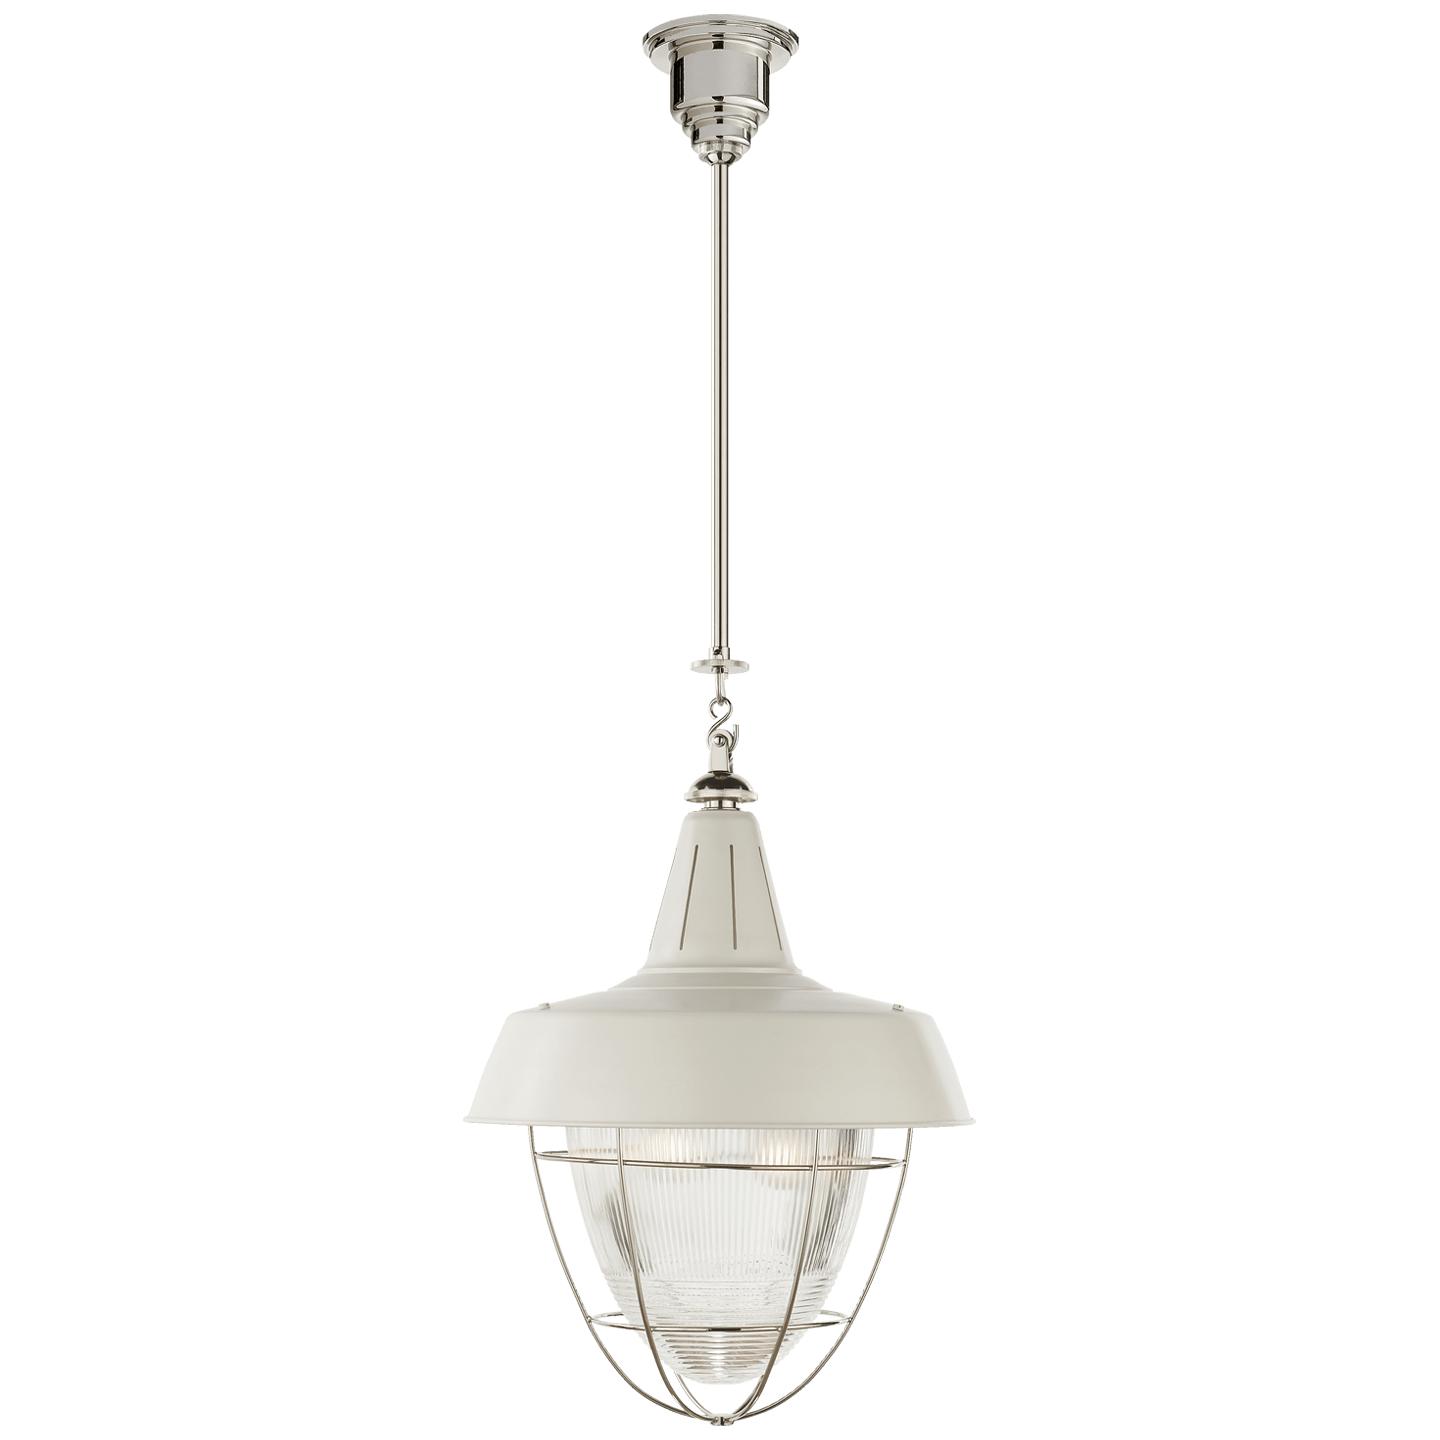 Купить Подвесной светильник Henry Industrial Hanging Light в интернет-магазине roooms.ru